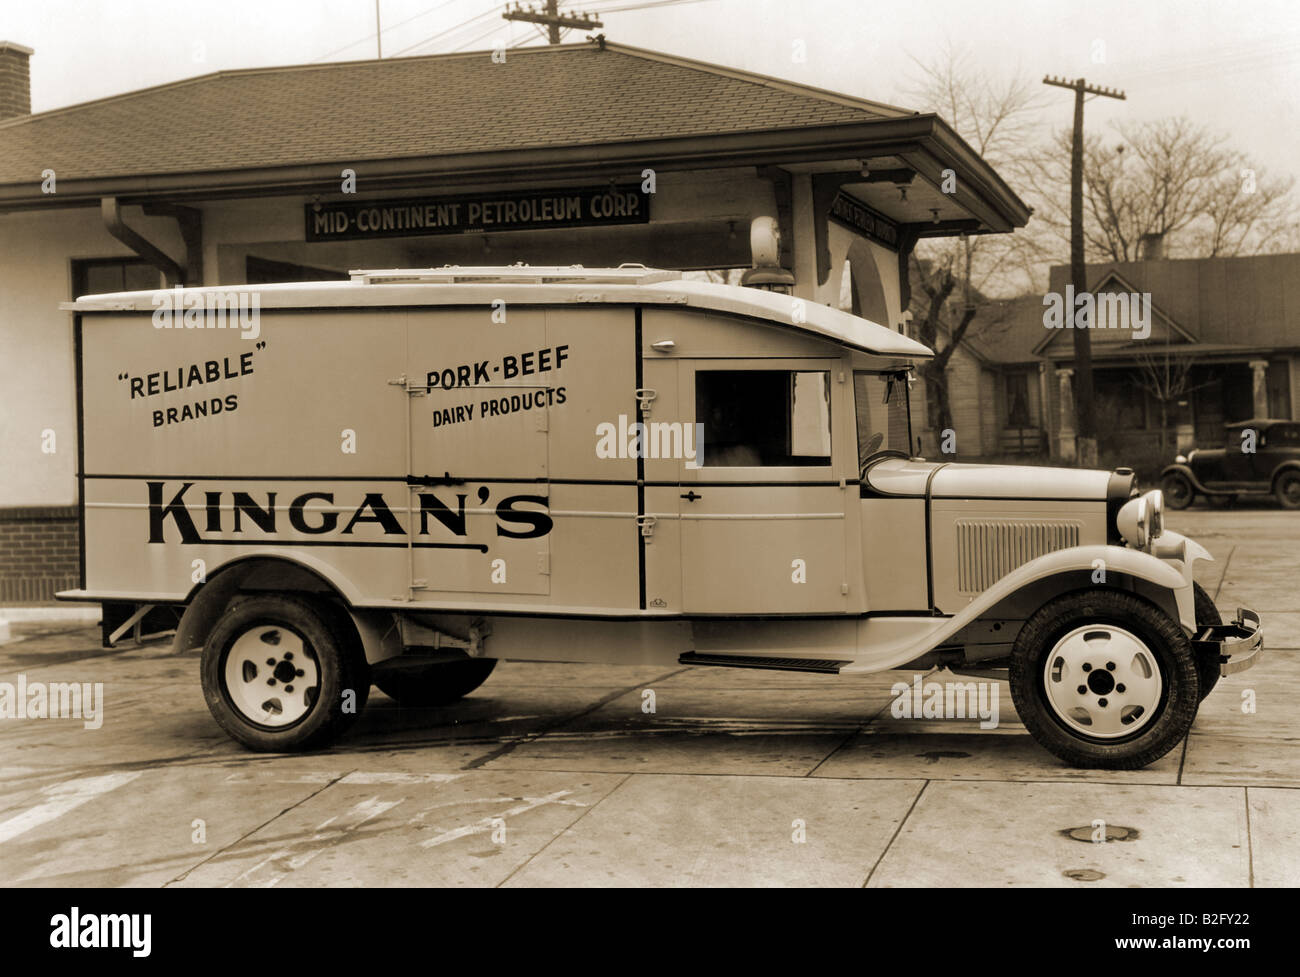 "Fiabilidad" del Kingan - Carne de Cerdo Productos Lácteos camión de entrega Foto de stock